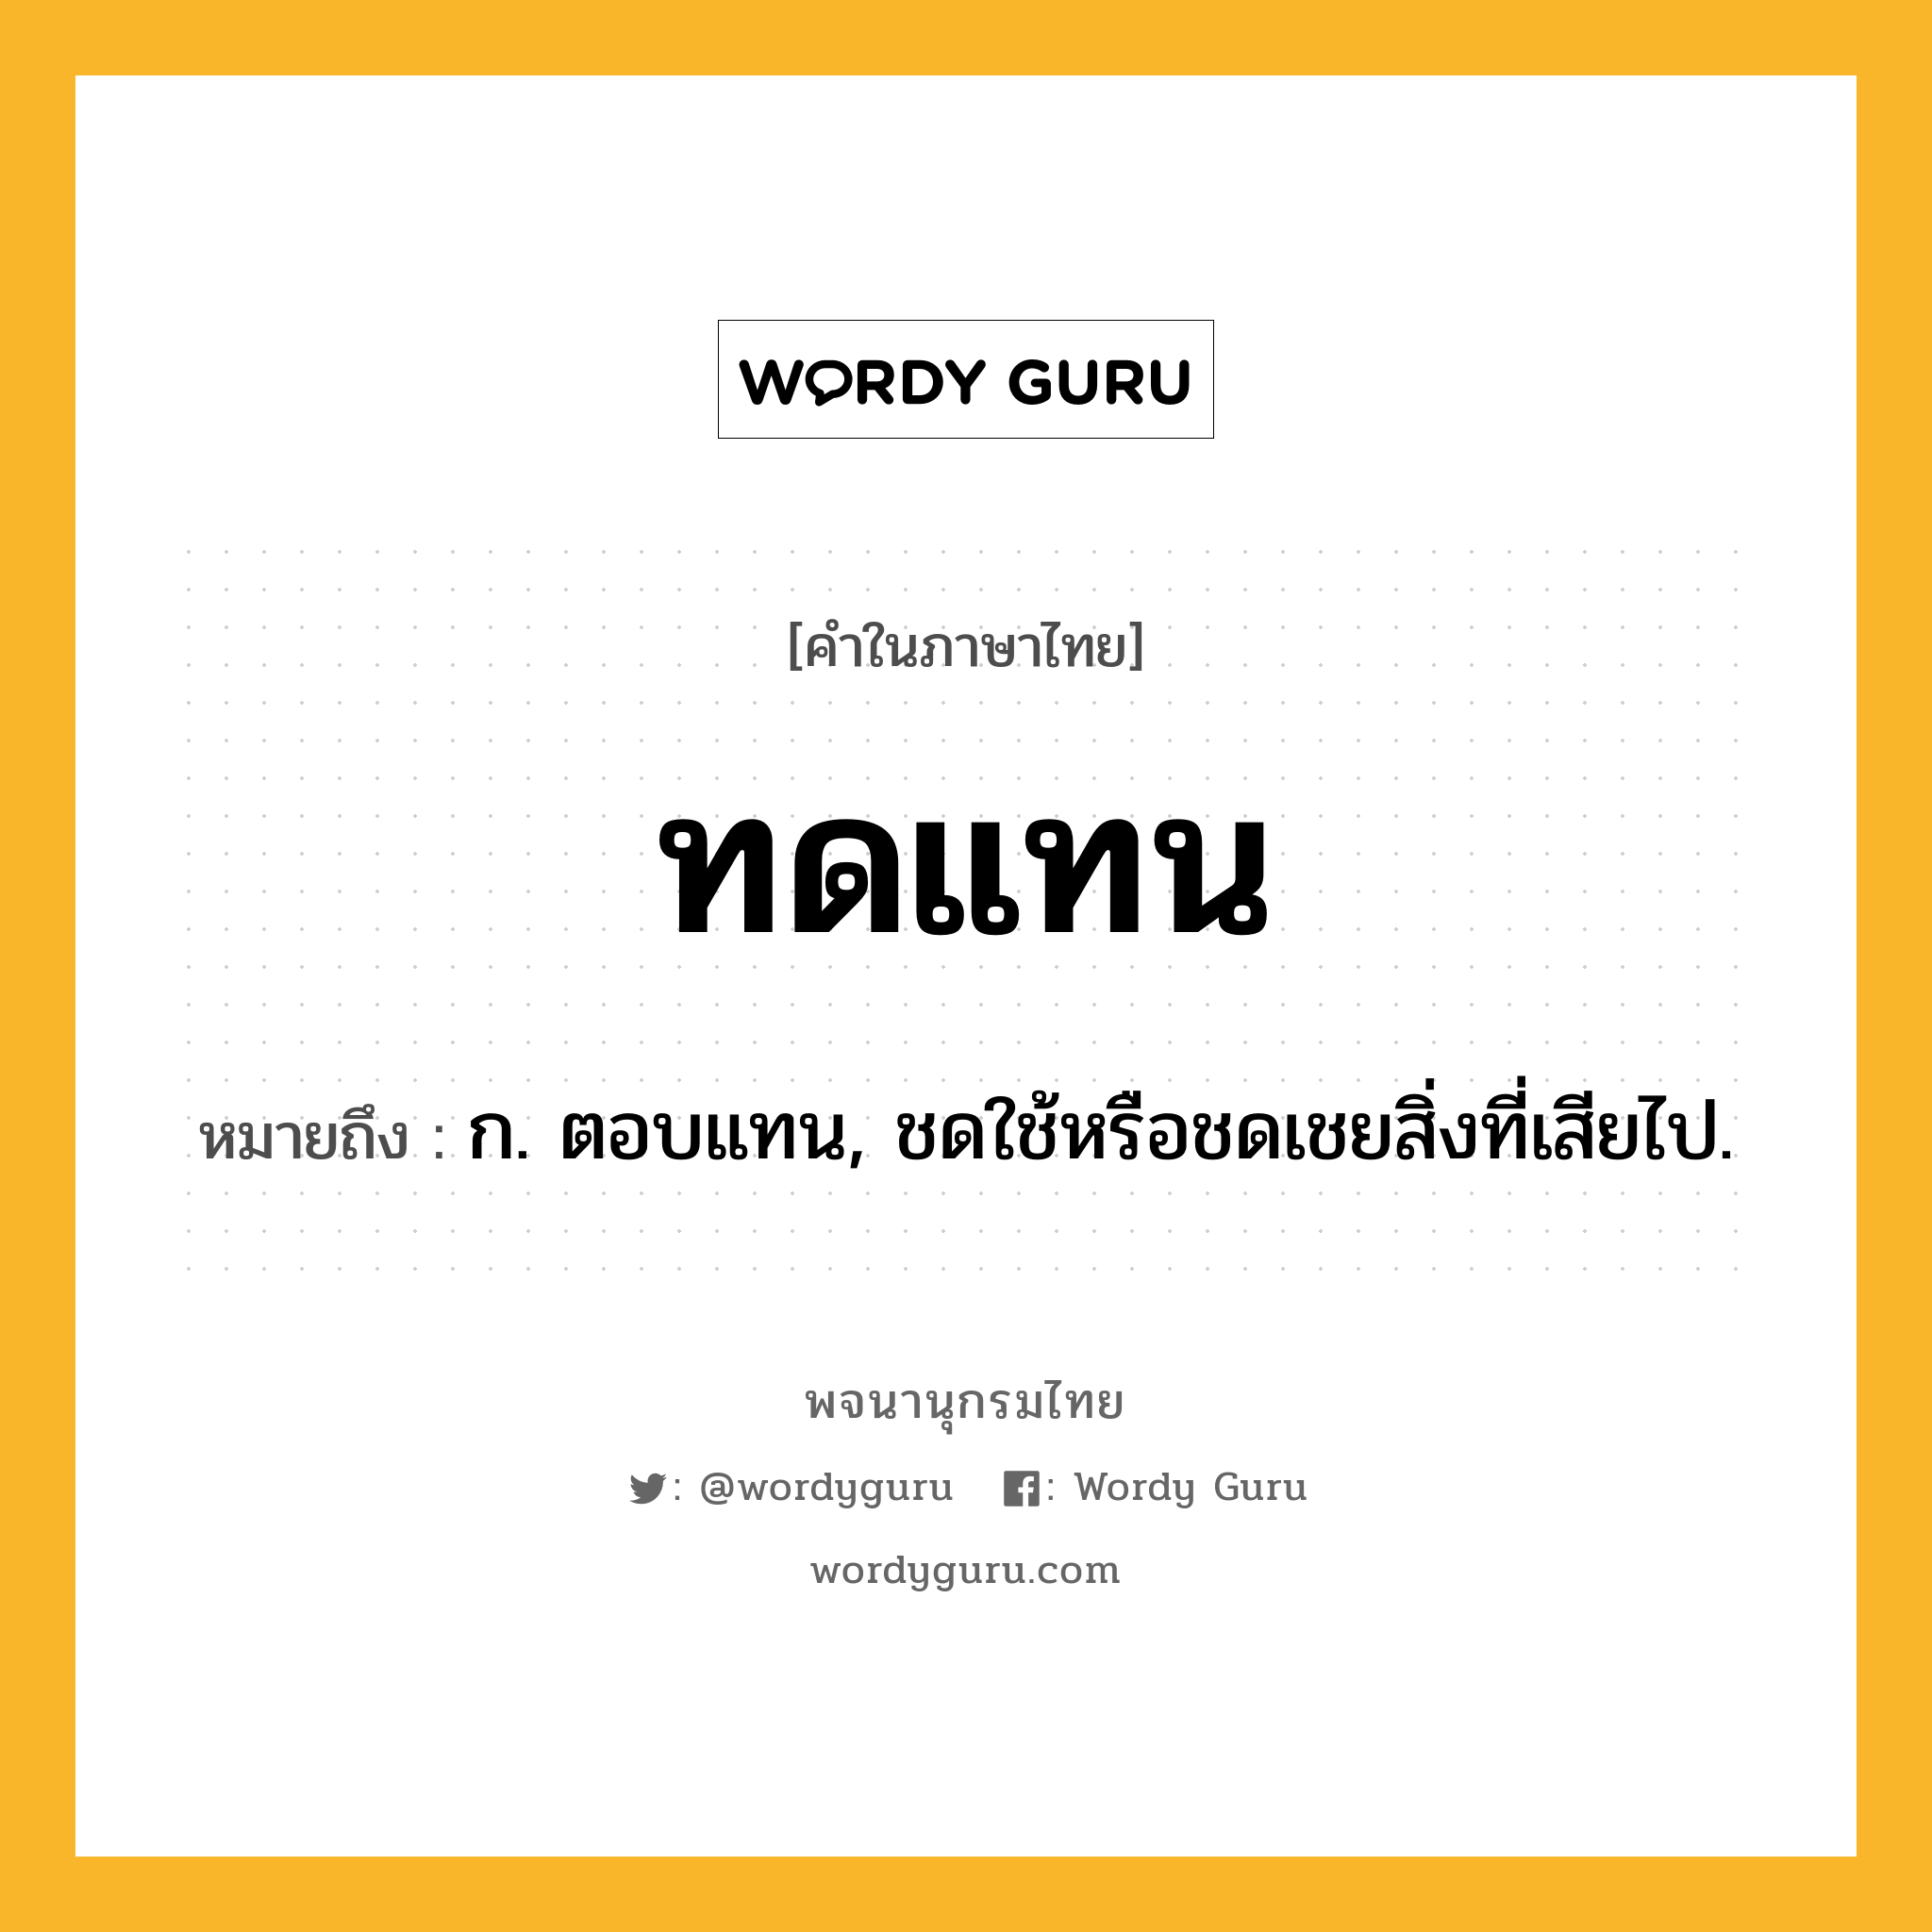 ทดแทน ความหมาย หมายถึงอะไร?, คำในภาษาไทย ทดแทน หมายถึง ก. ตอบแทน, ชดใช้หรือชดเชยสิ่งที่เสียไป.